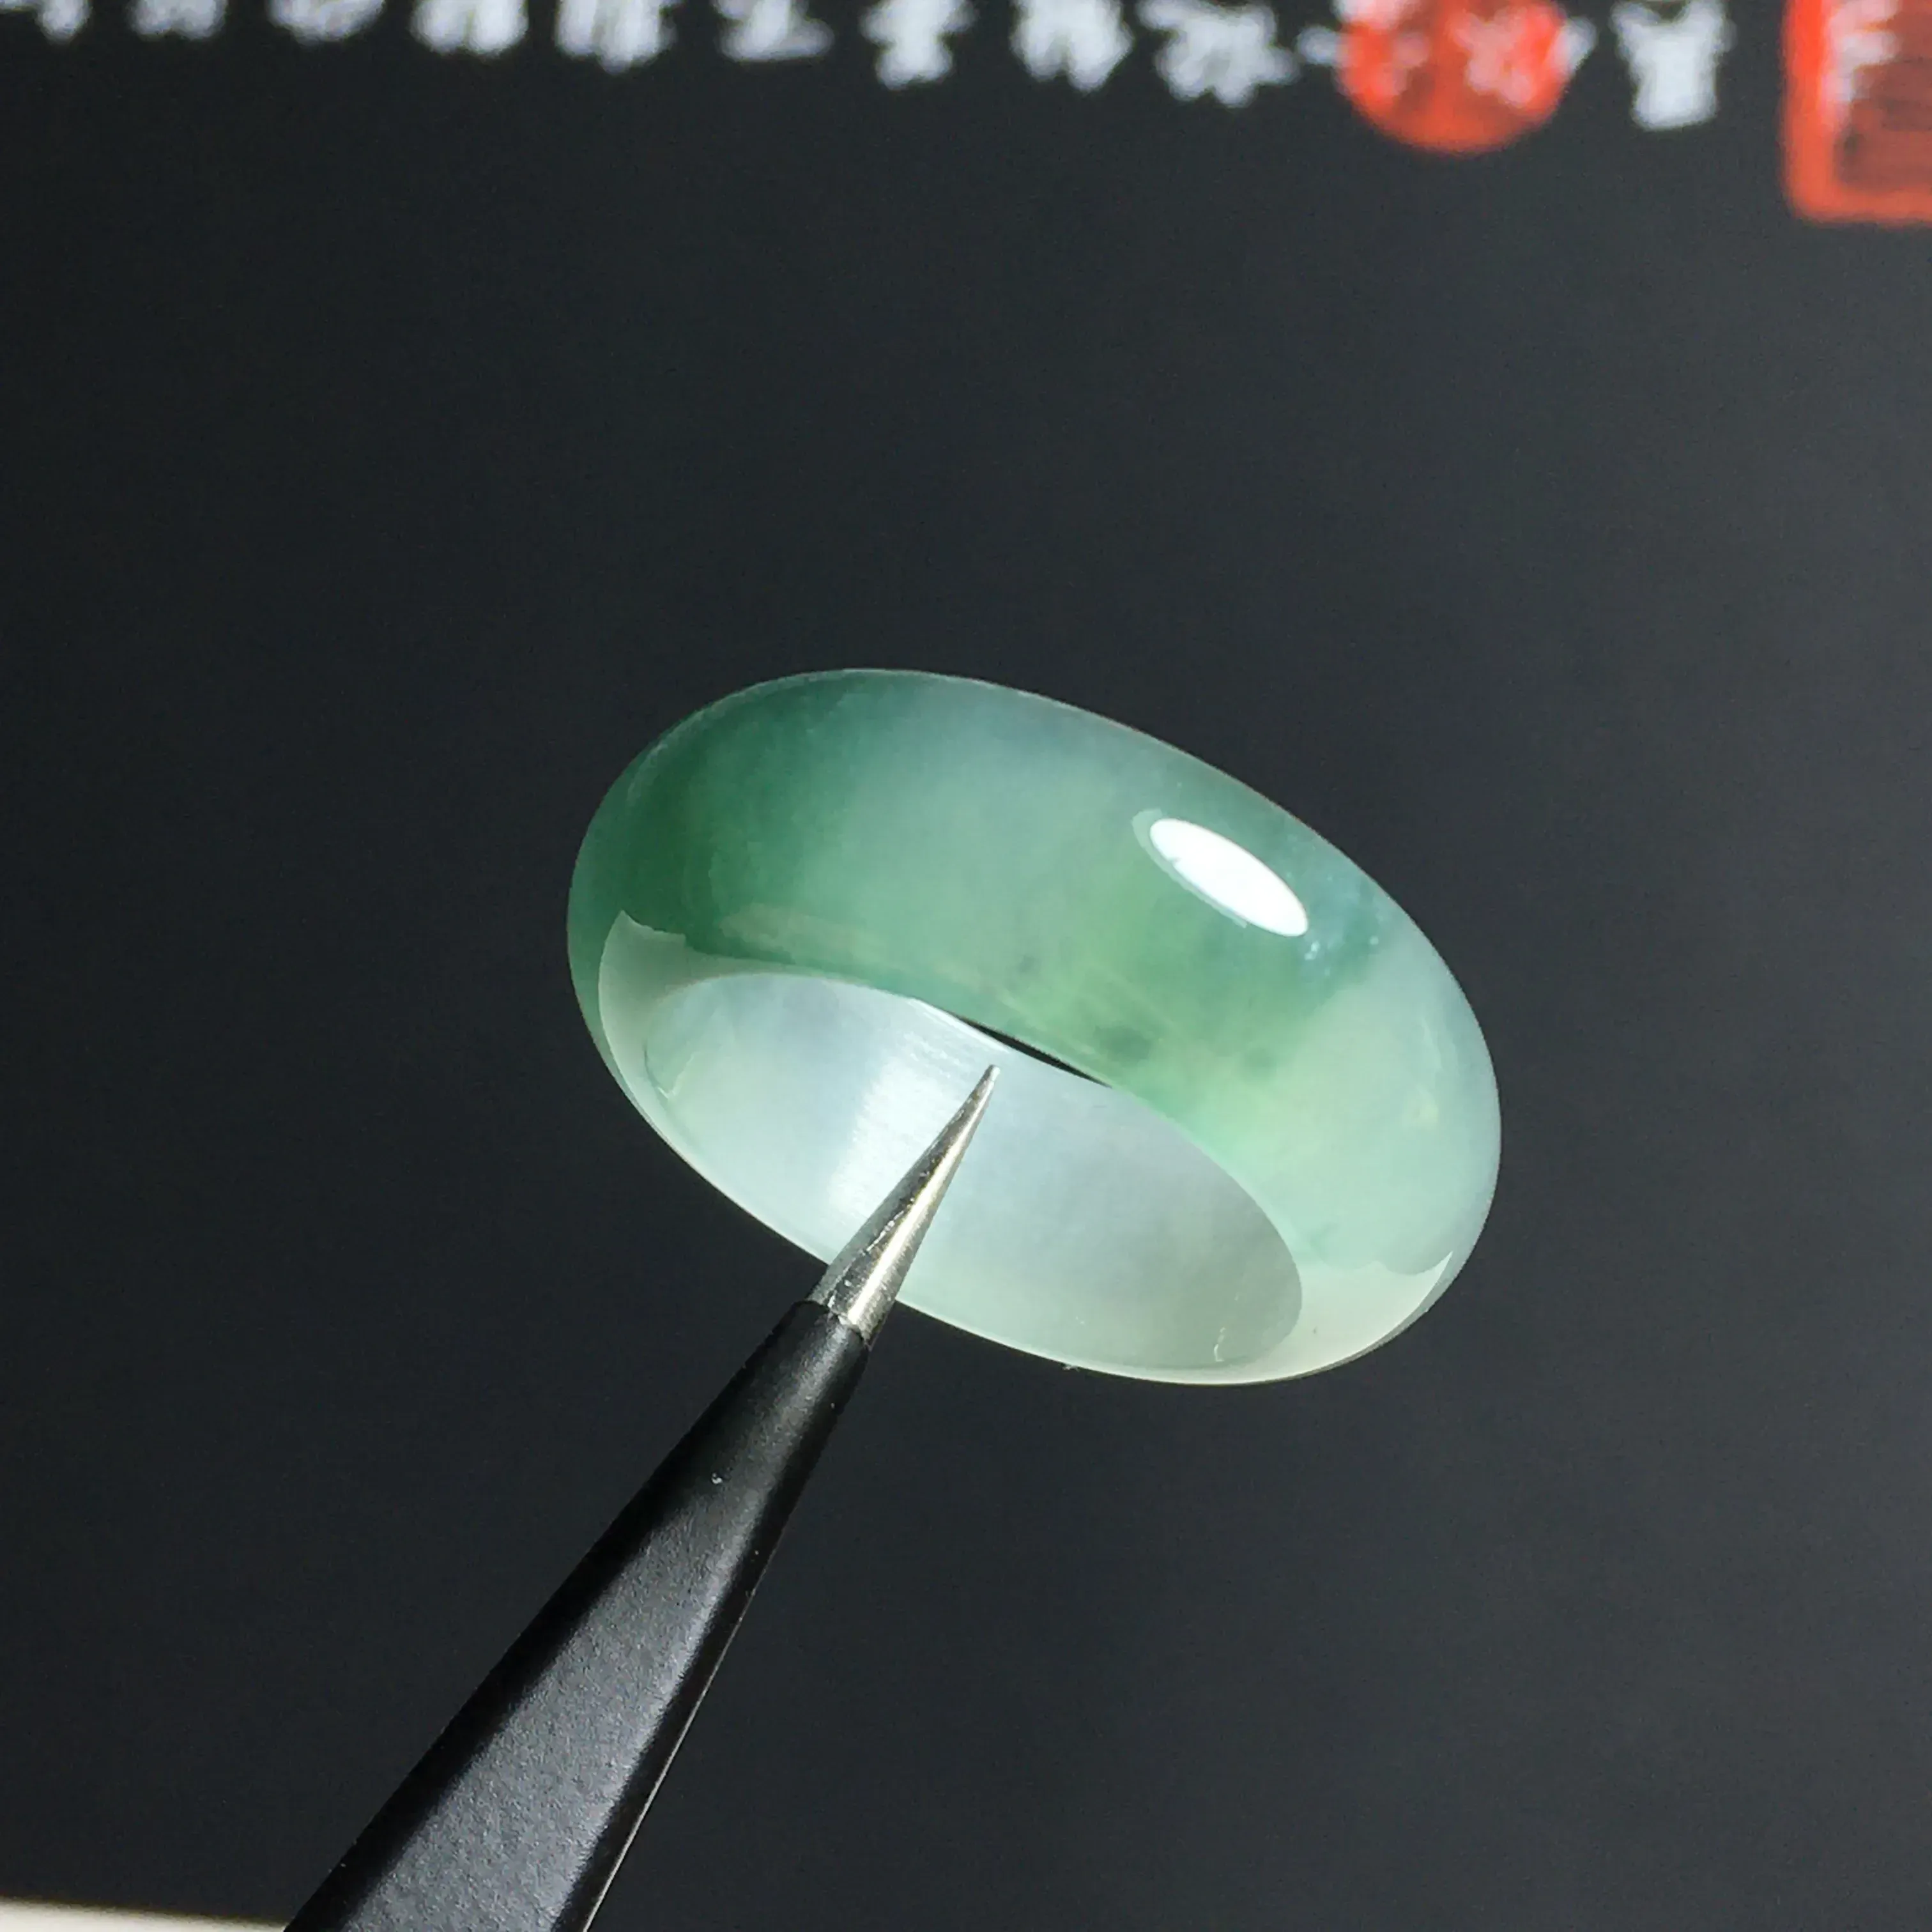 冰糯种晴绿指环 外径24宽7.5厚3毫米 内直径17.5毫米 种好通透 胶感十足 色泽亮丽